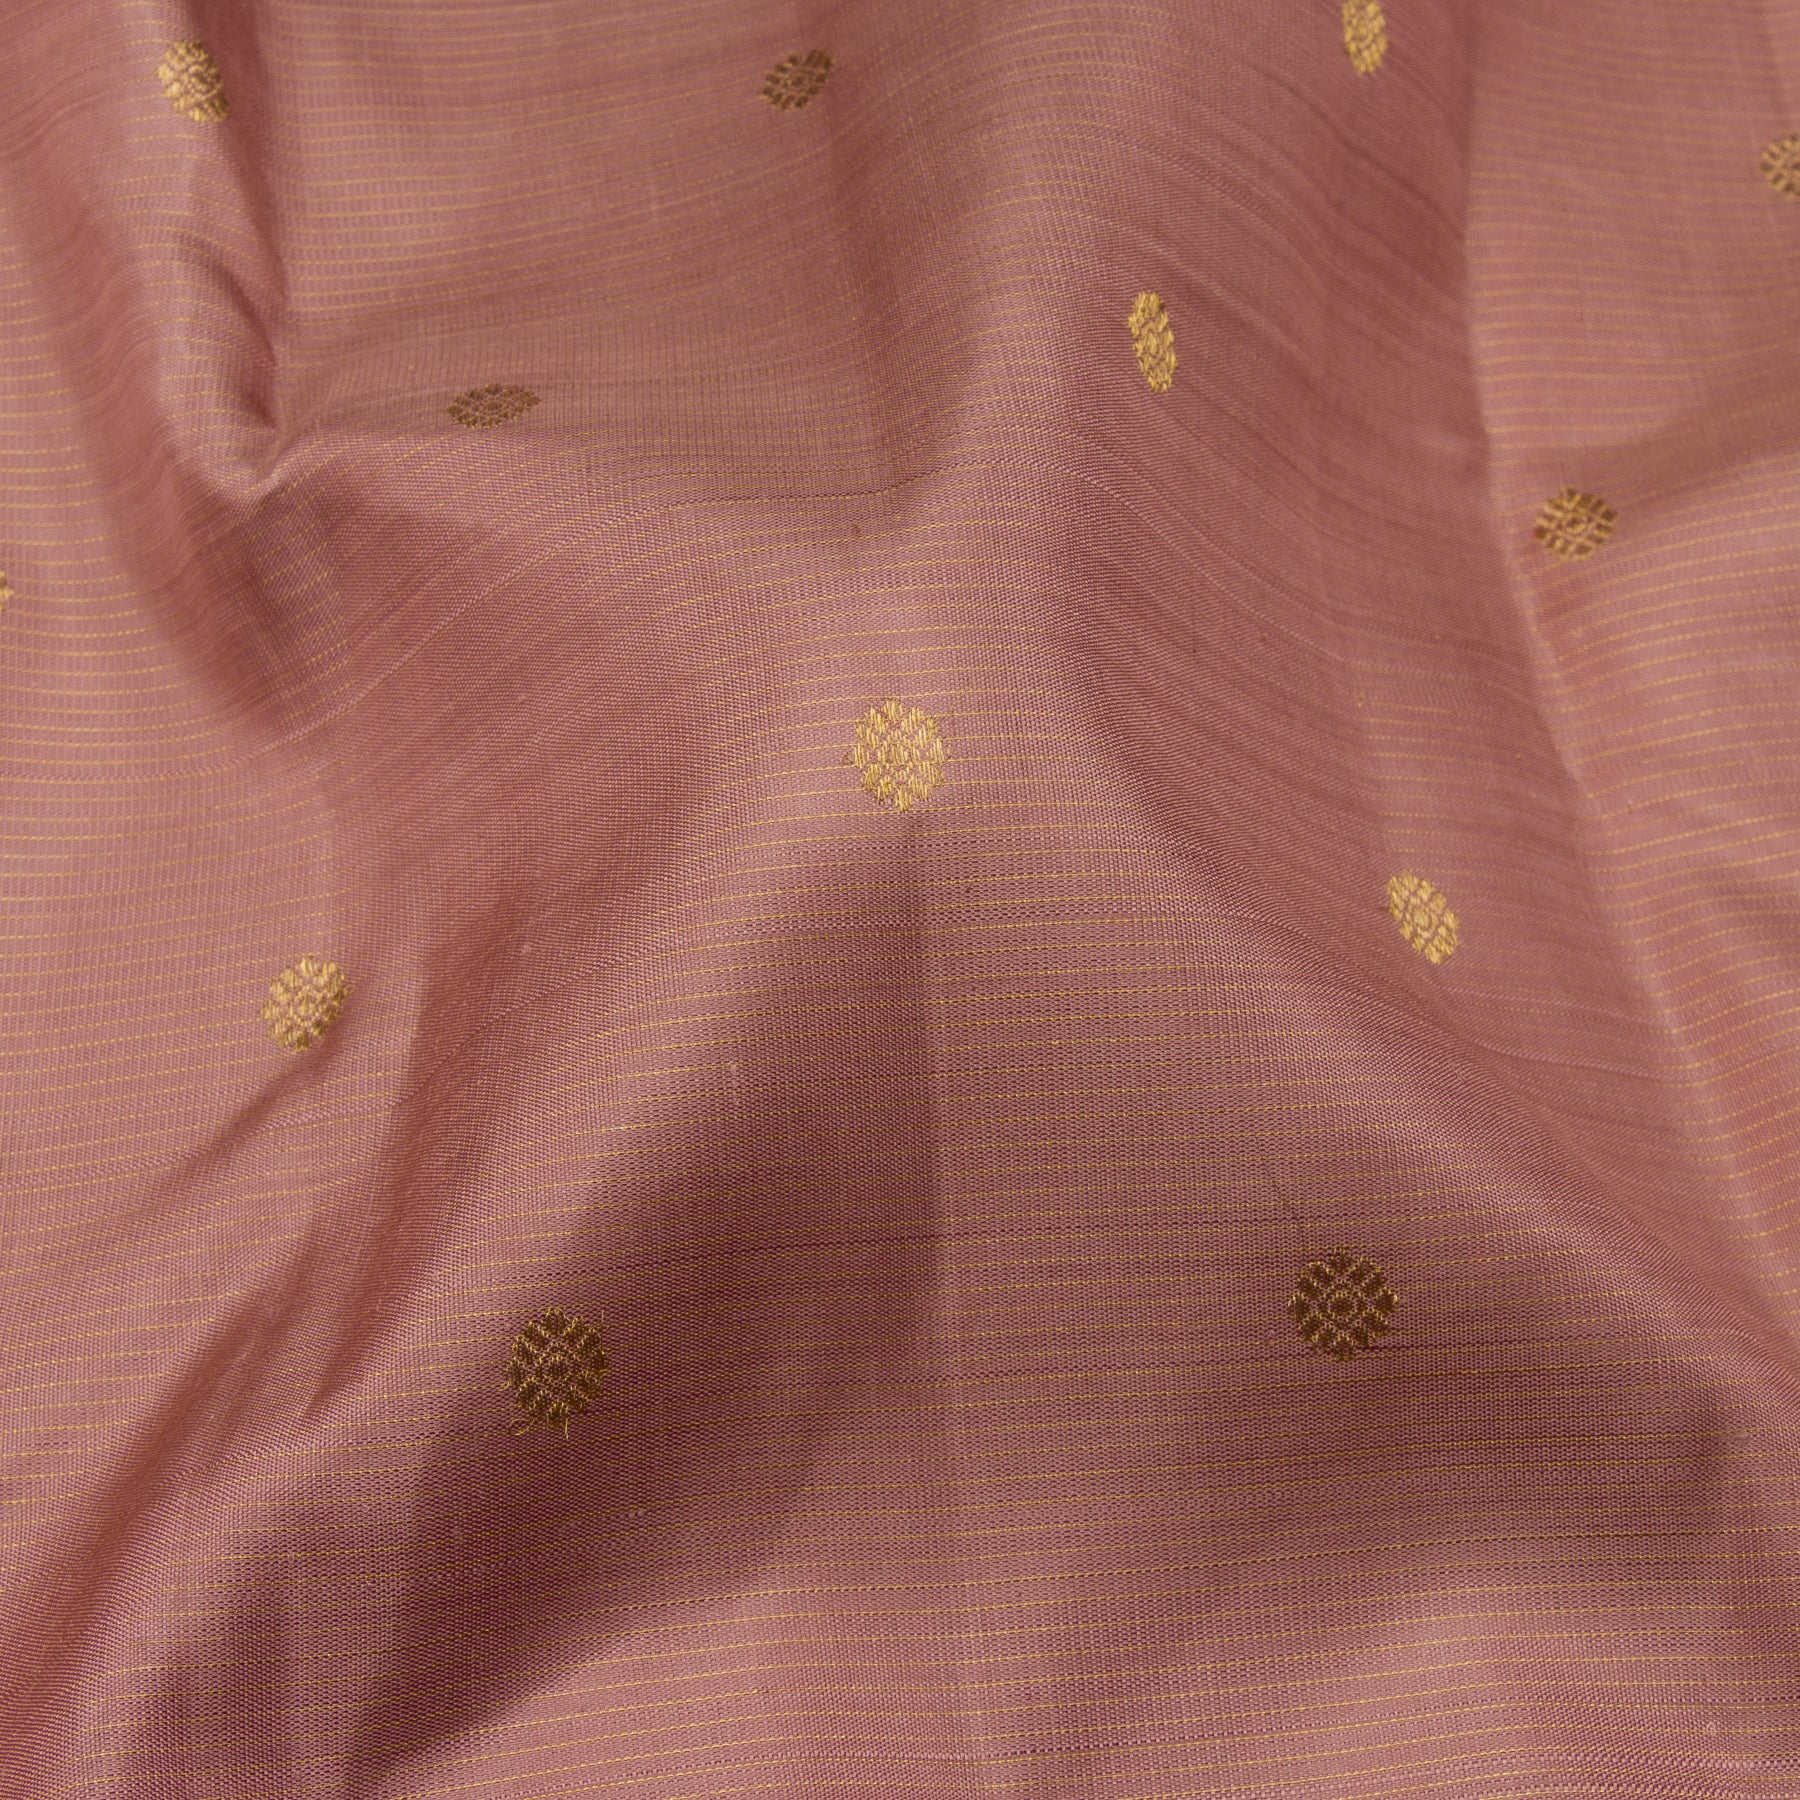 Kanakavalli Kanjivaram Silk Sari 23-599-HS001-13893 - Fabric View